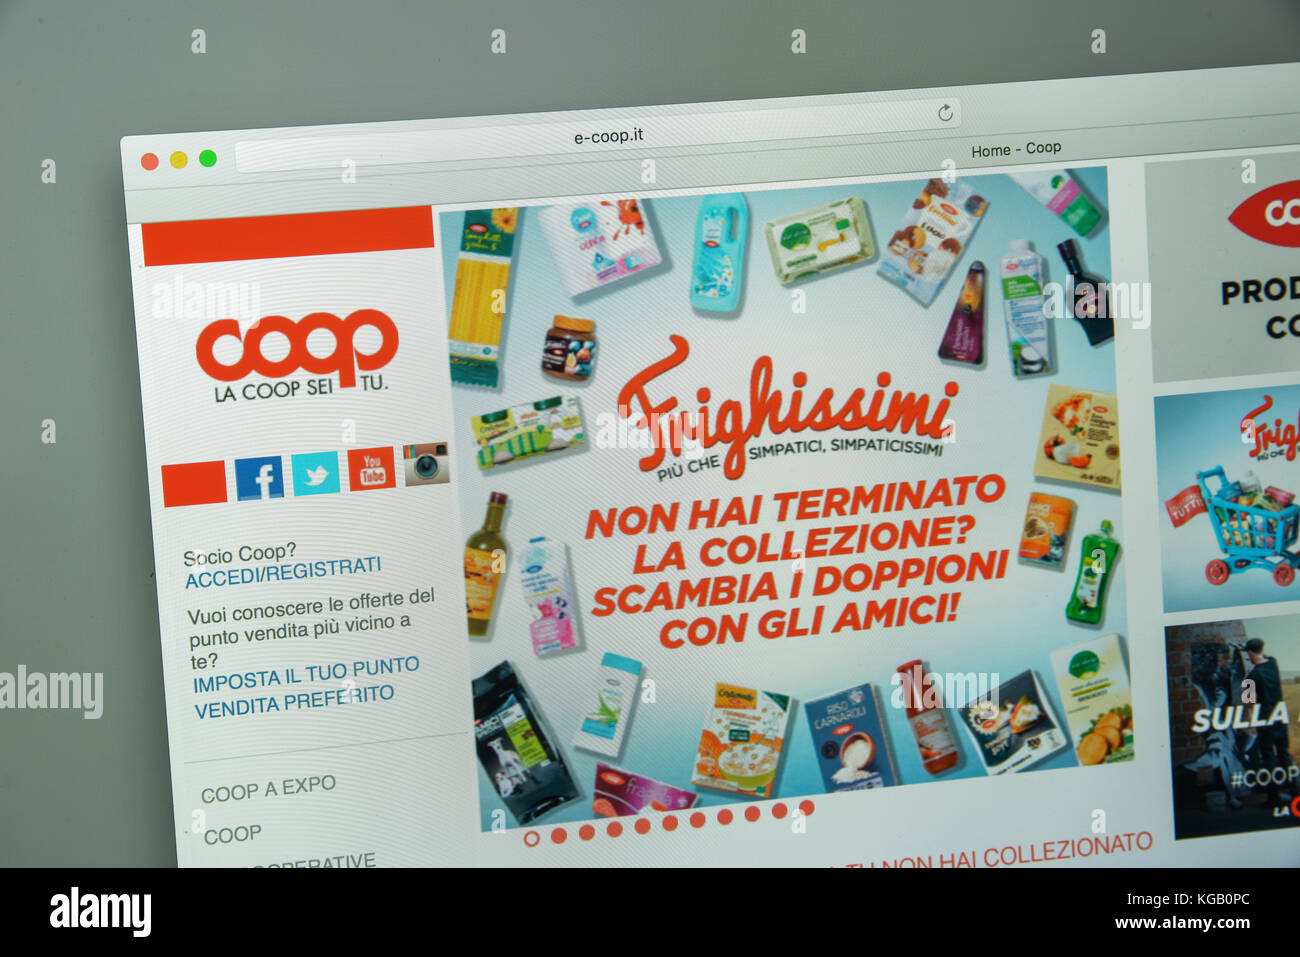 Milano, Italia - 10 agosto 2017: coop website homepage. è un italiano della catena di ipermercati coop.it logo visibile. Foto Stock